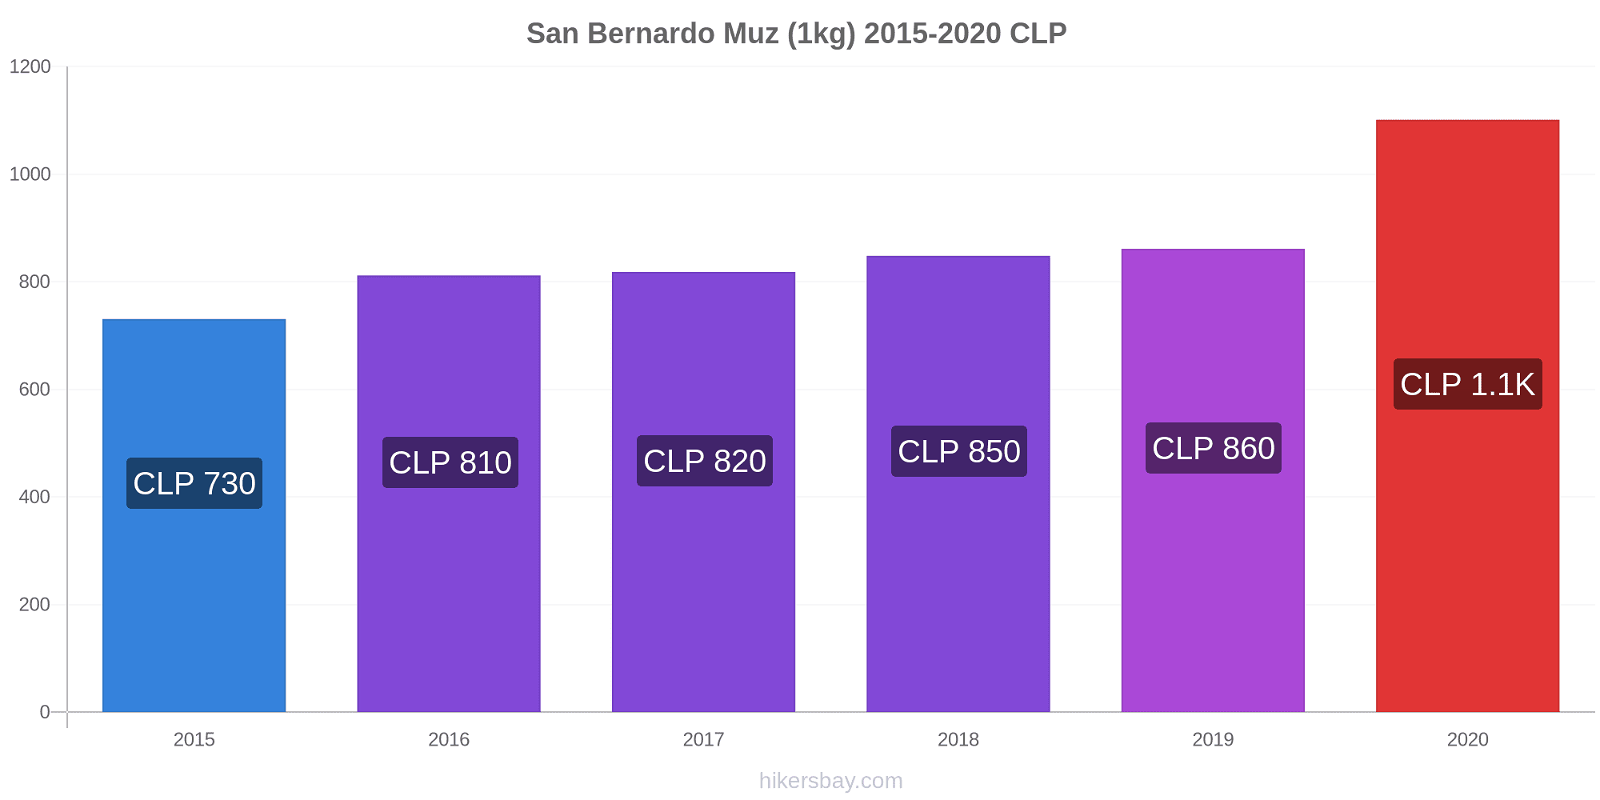 San Bernardo fiyat değişiklikleri Muz (1kg) hikersbay.com